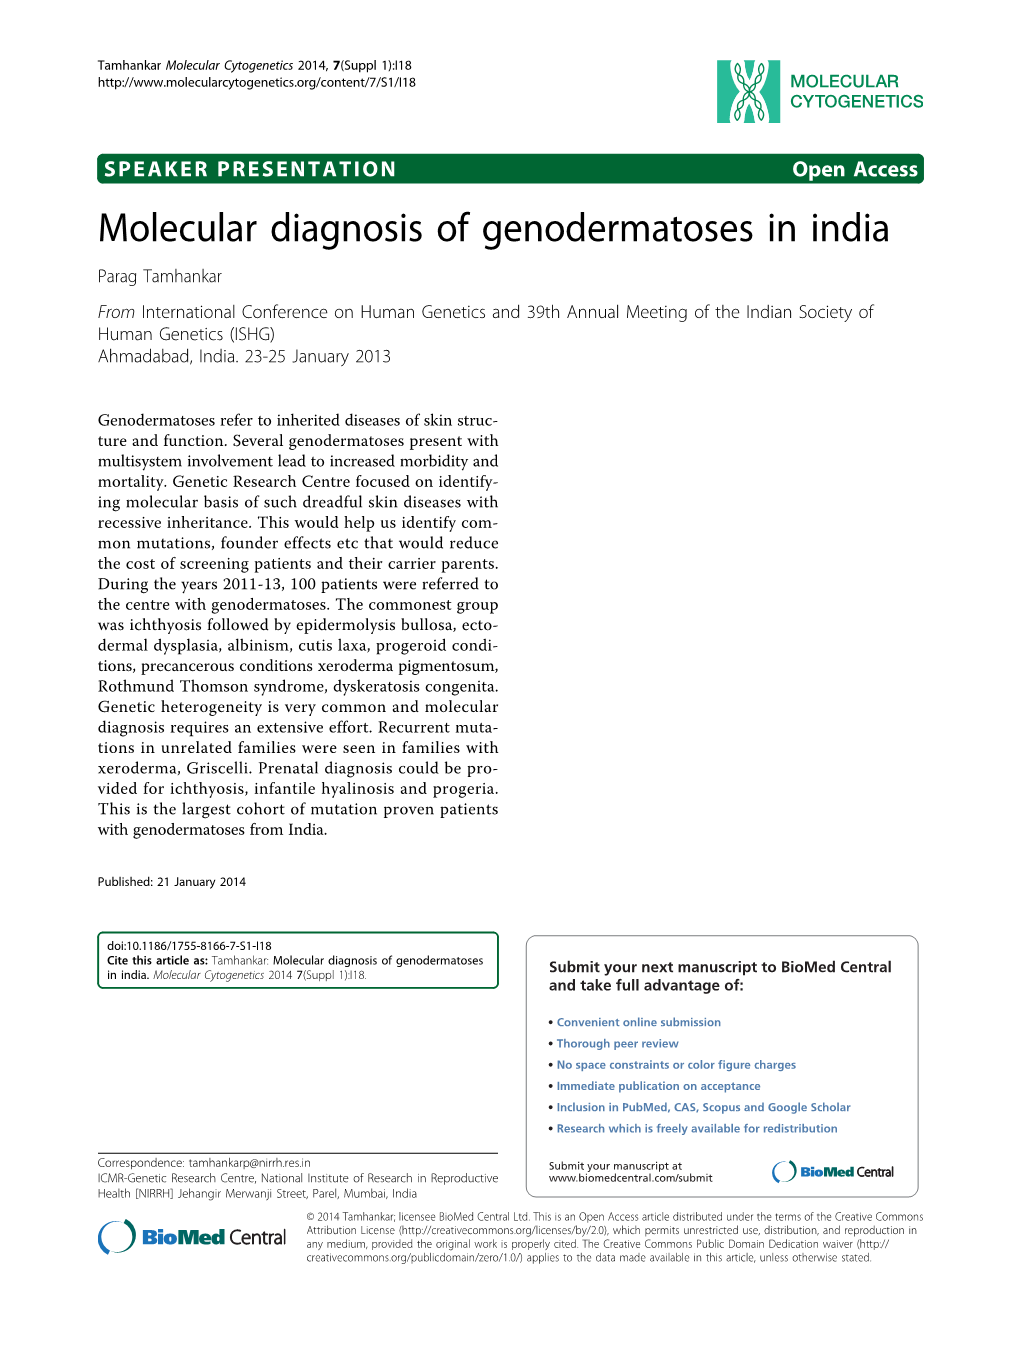 Molecular Diagnosis of Genodermatoses in India